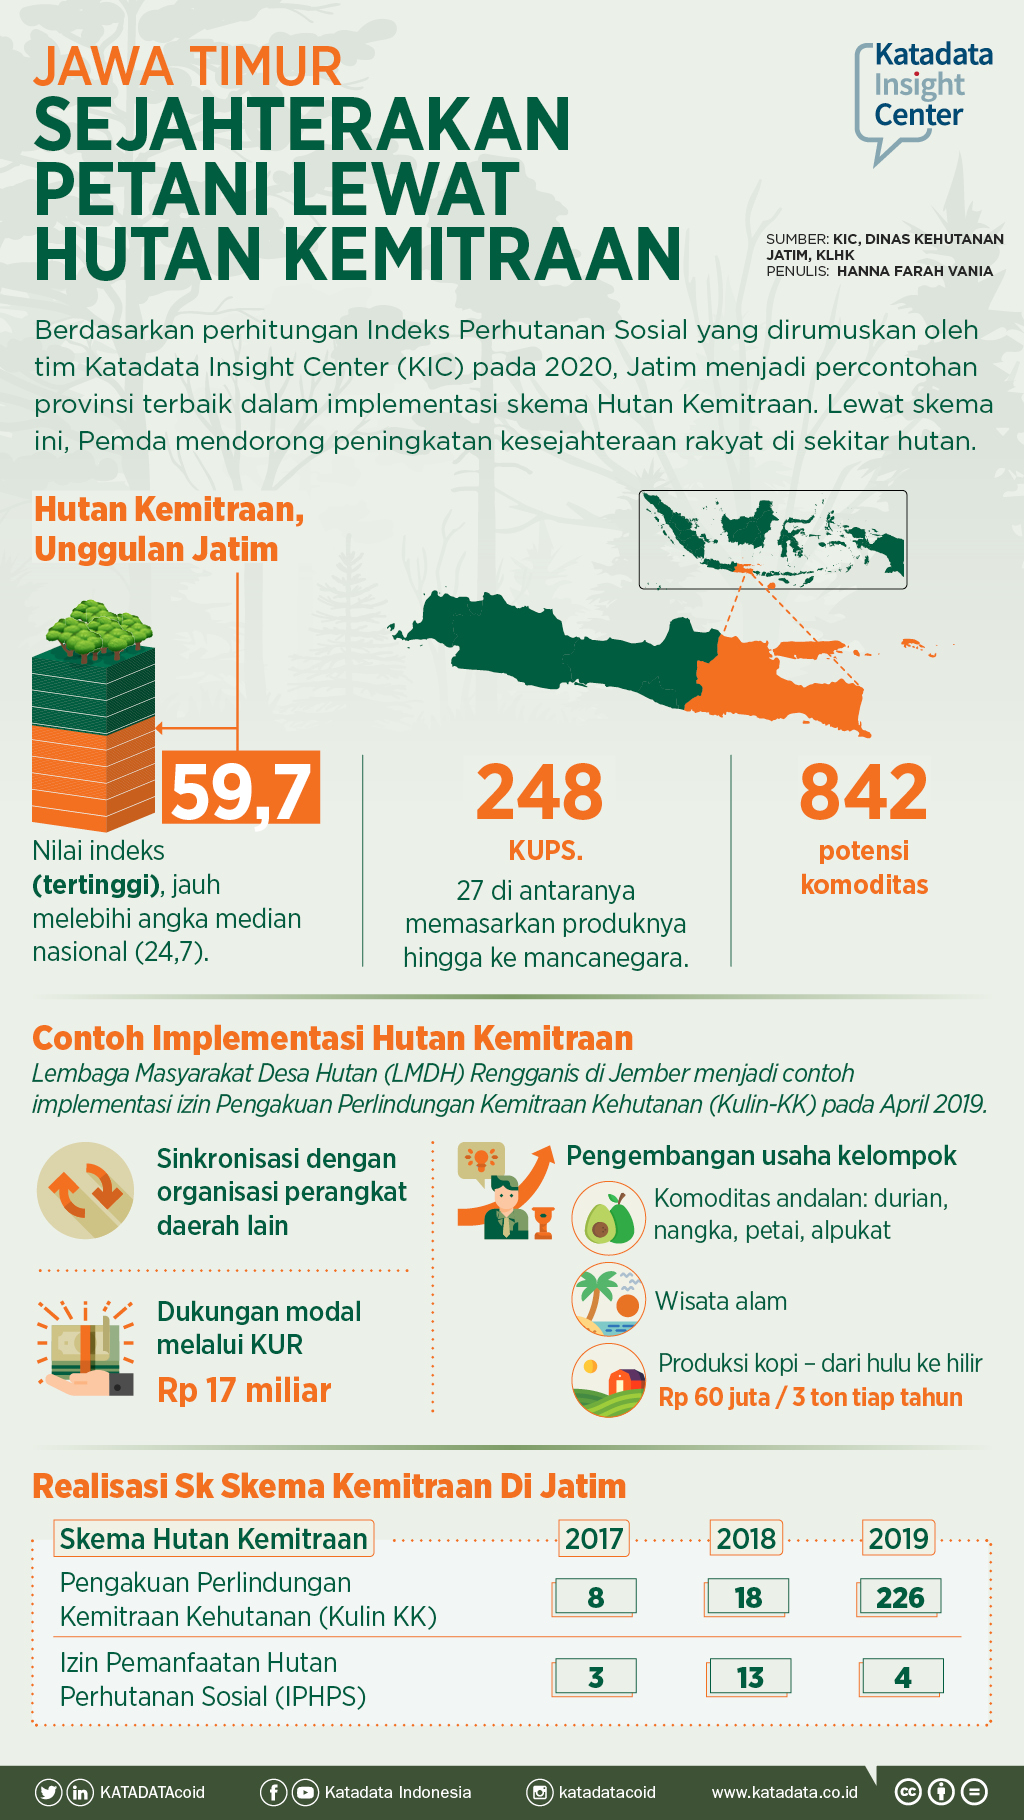 Jawa Timur, Sejahterakan Petani Lewat Hutan Kemitraan